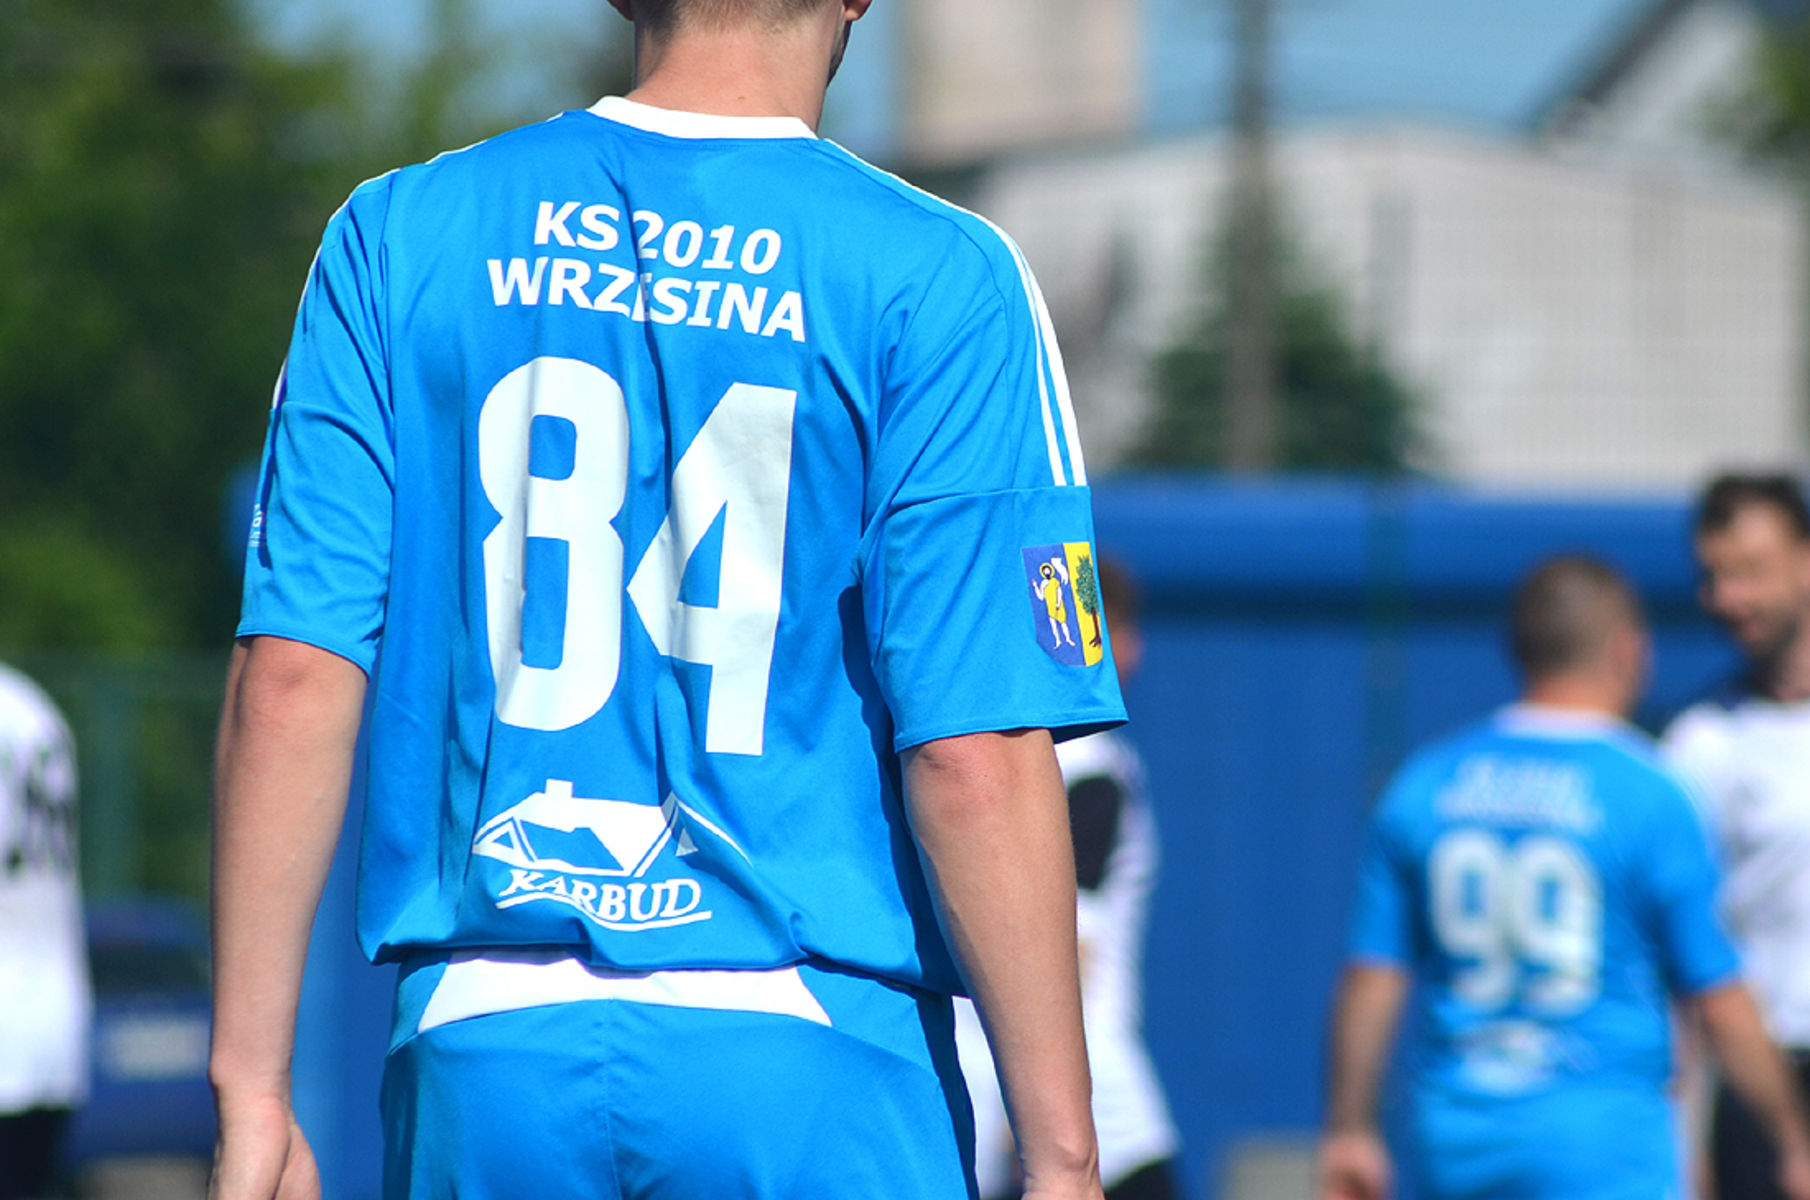 KS 2010 Wrzesina przegrał swoje pierwsze spotkanie w sezonie. Fot. Paweł Piekutowski